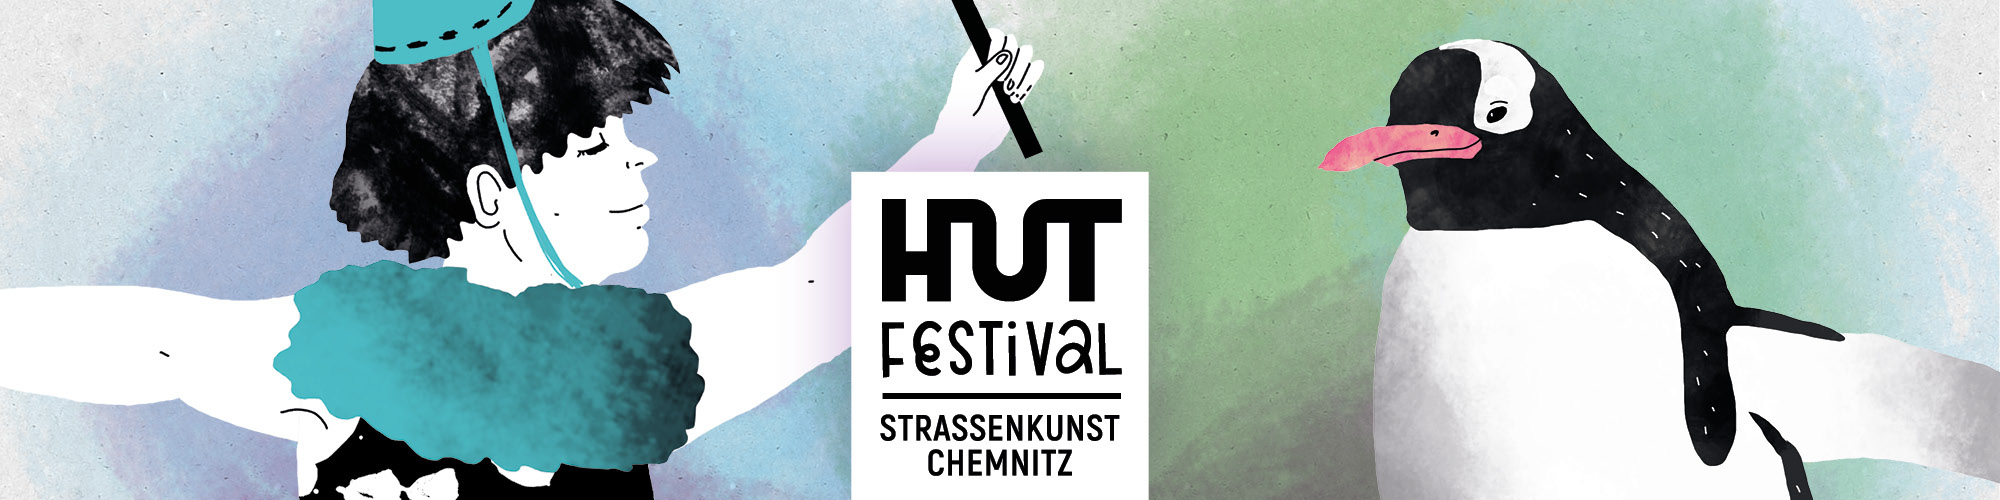 Hutfestival Chemnitz Straßenkunst 